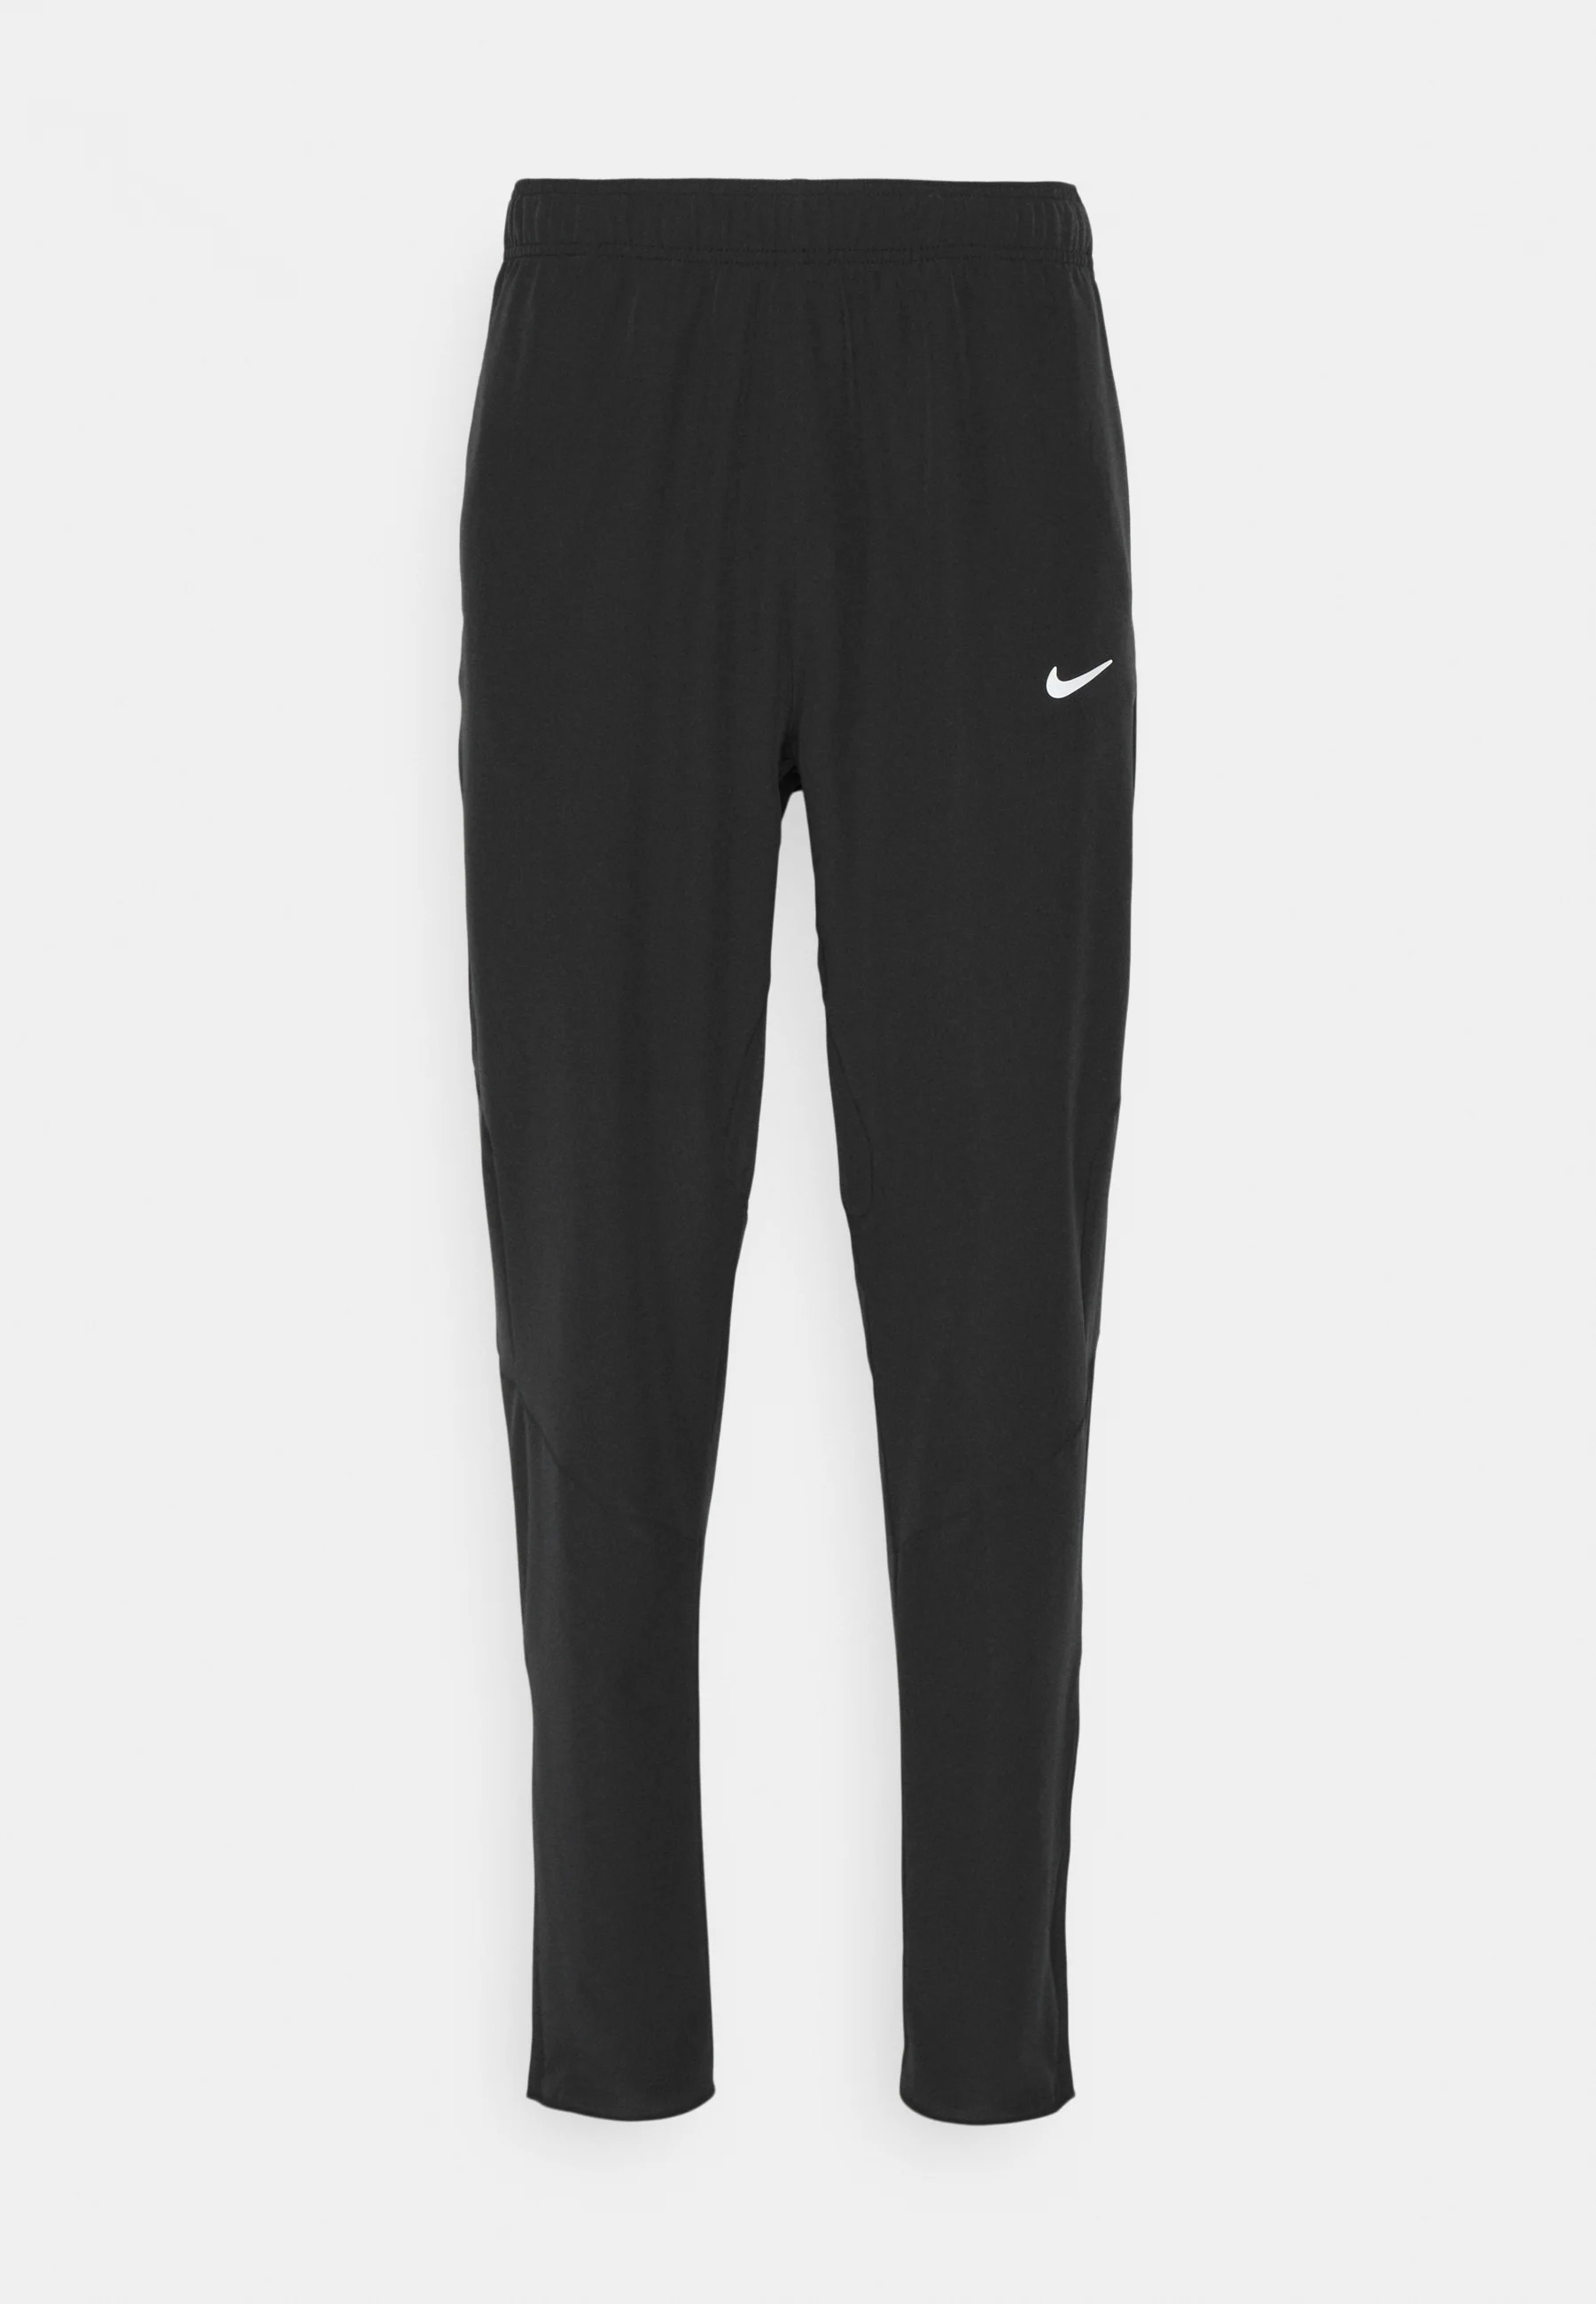 Спортивные брюки Nike Performance Pant, черный спортивные брюки pant taper nike черный белый